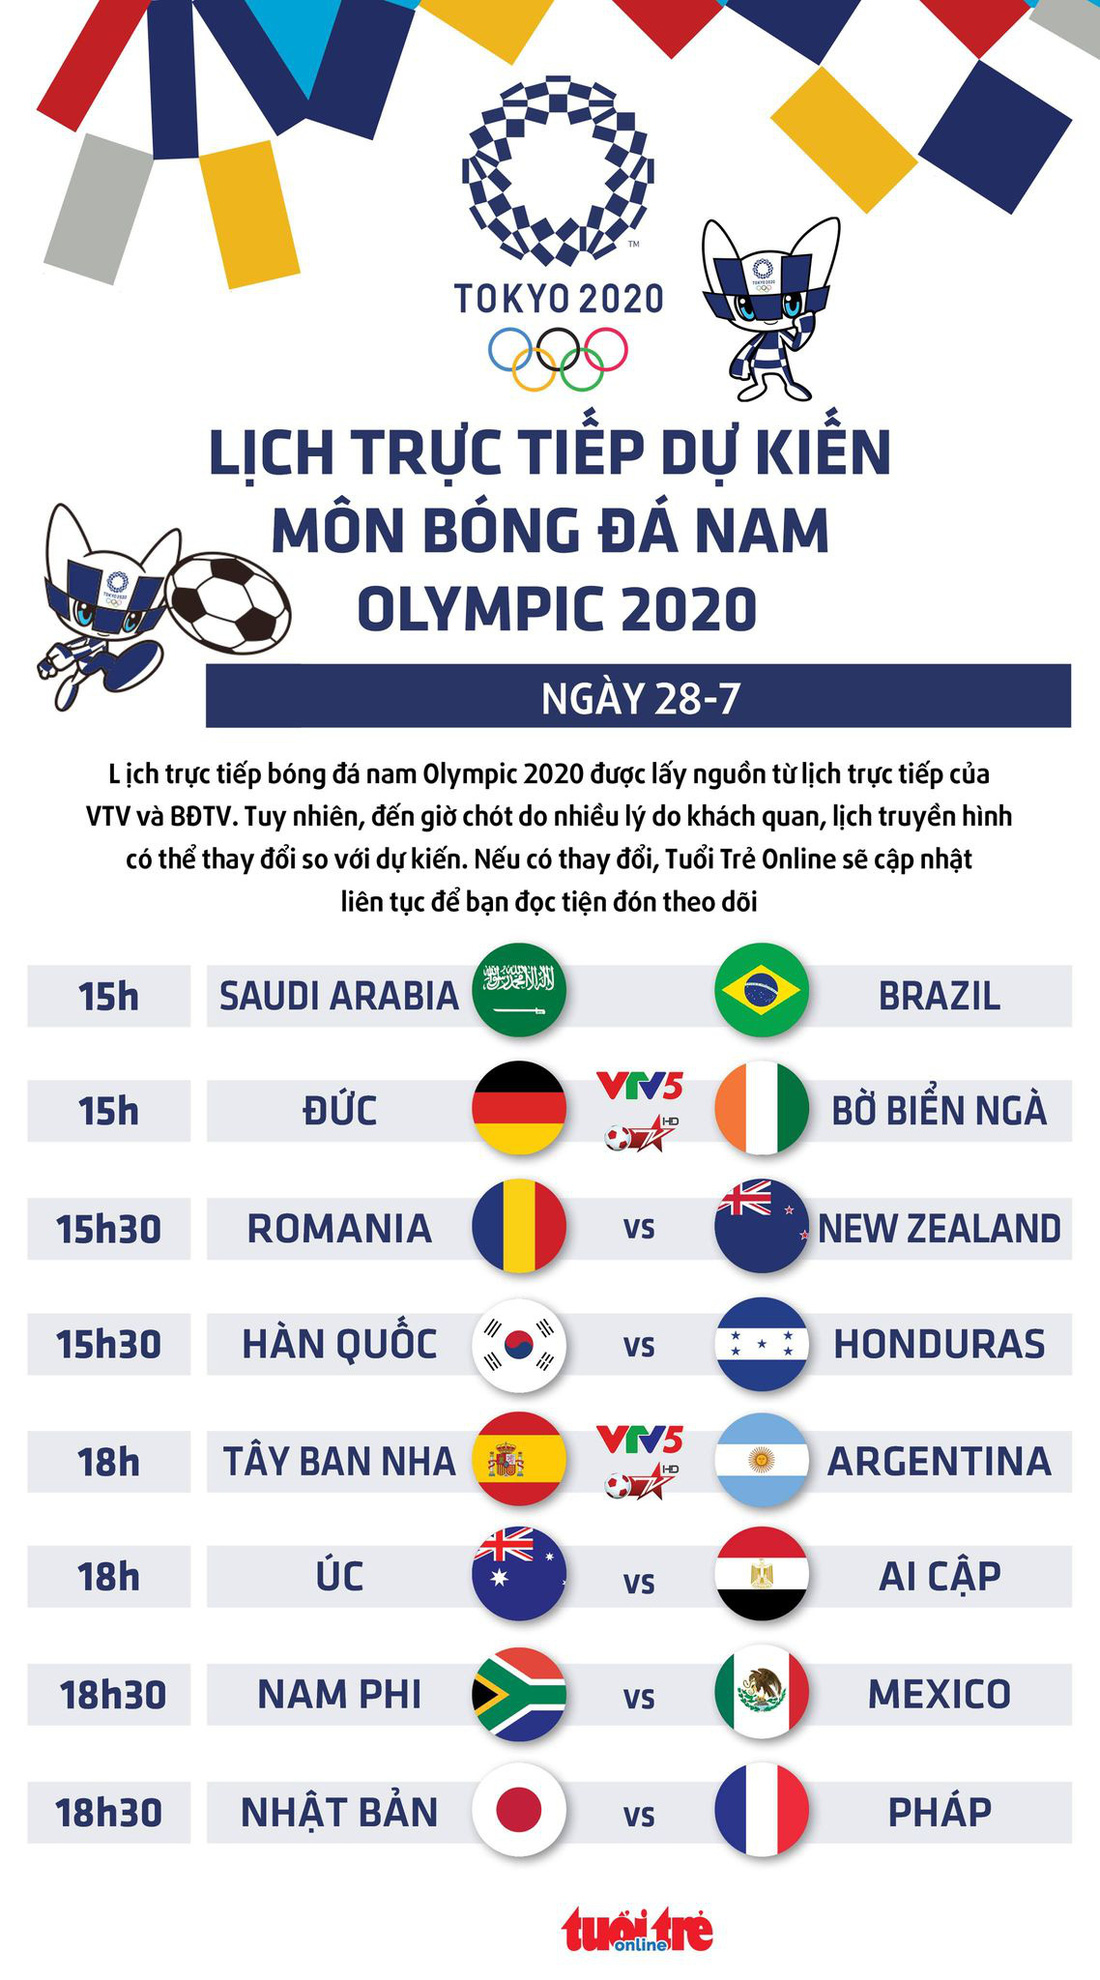 Lịch trực tiếp dự kiến bóng đá nam Olympic 2020 trên VTV: Tây Ban Nha - Argentina, Đức - Bờ Biển Ngà - Ảnh 1.